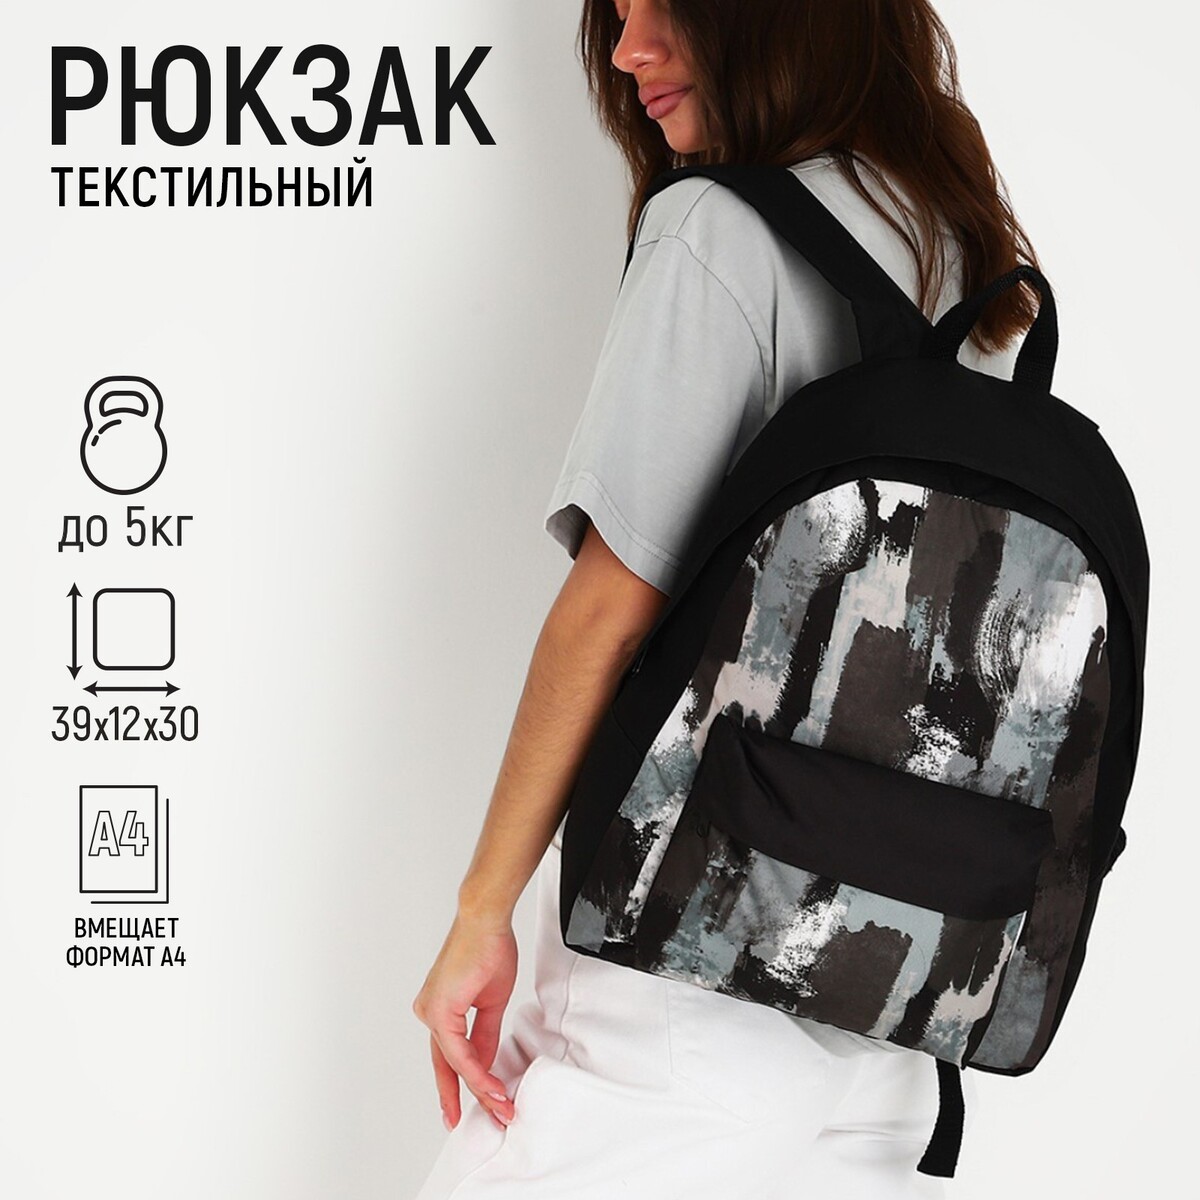 Рюкзак текстильный хаки, с карманом, 30х12х40см, цвет черный, серый рюкзак текстильный с ным карманом 30х39х12 см бордовый